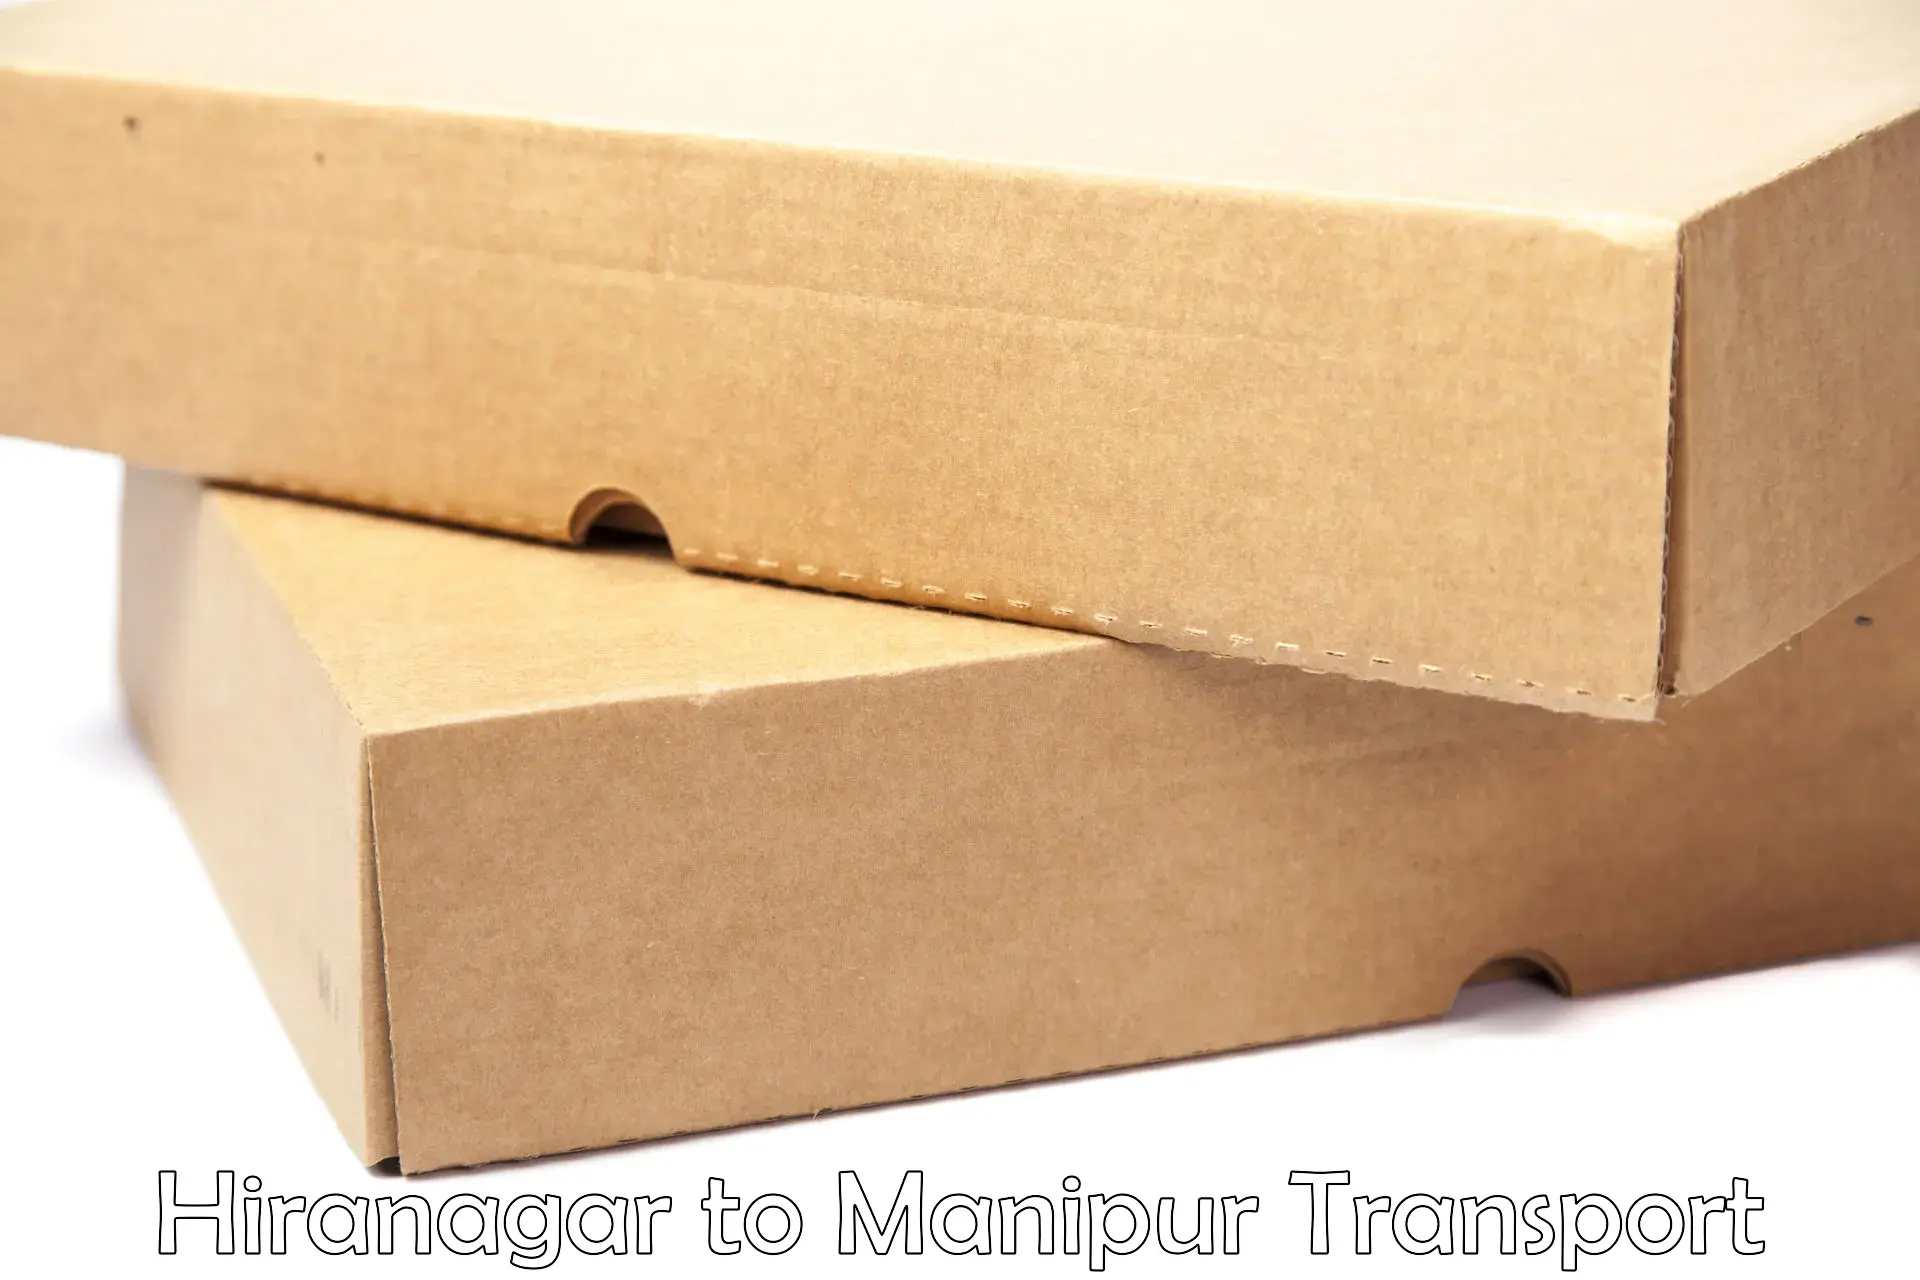 Vehicle parcel service Hiranagar to Manipur